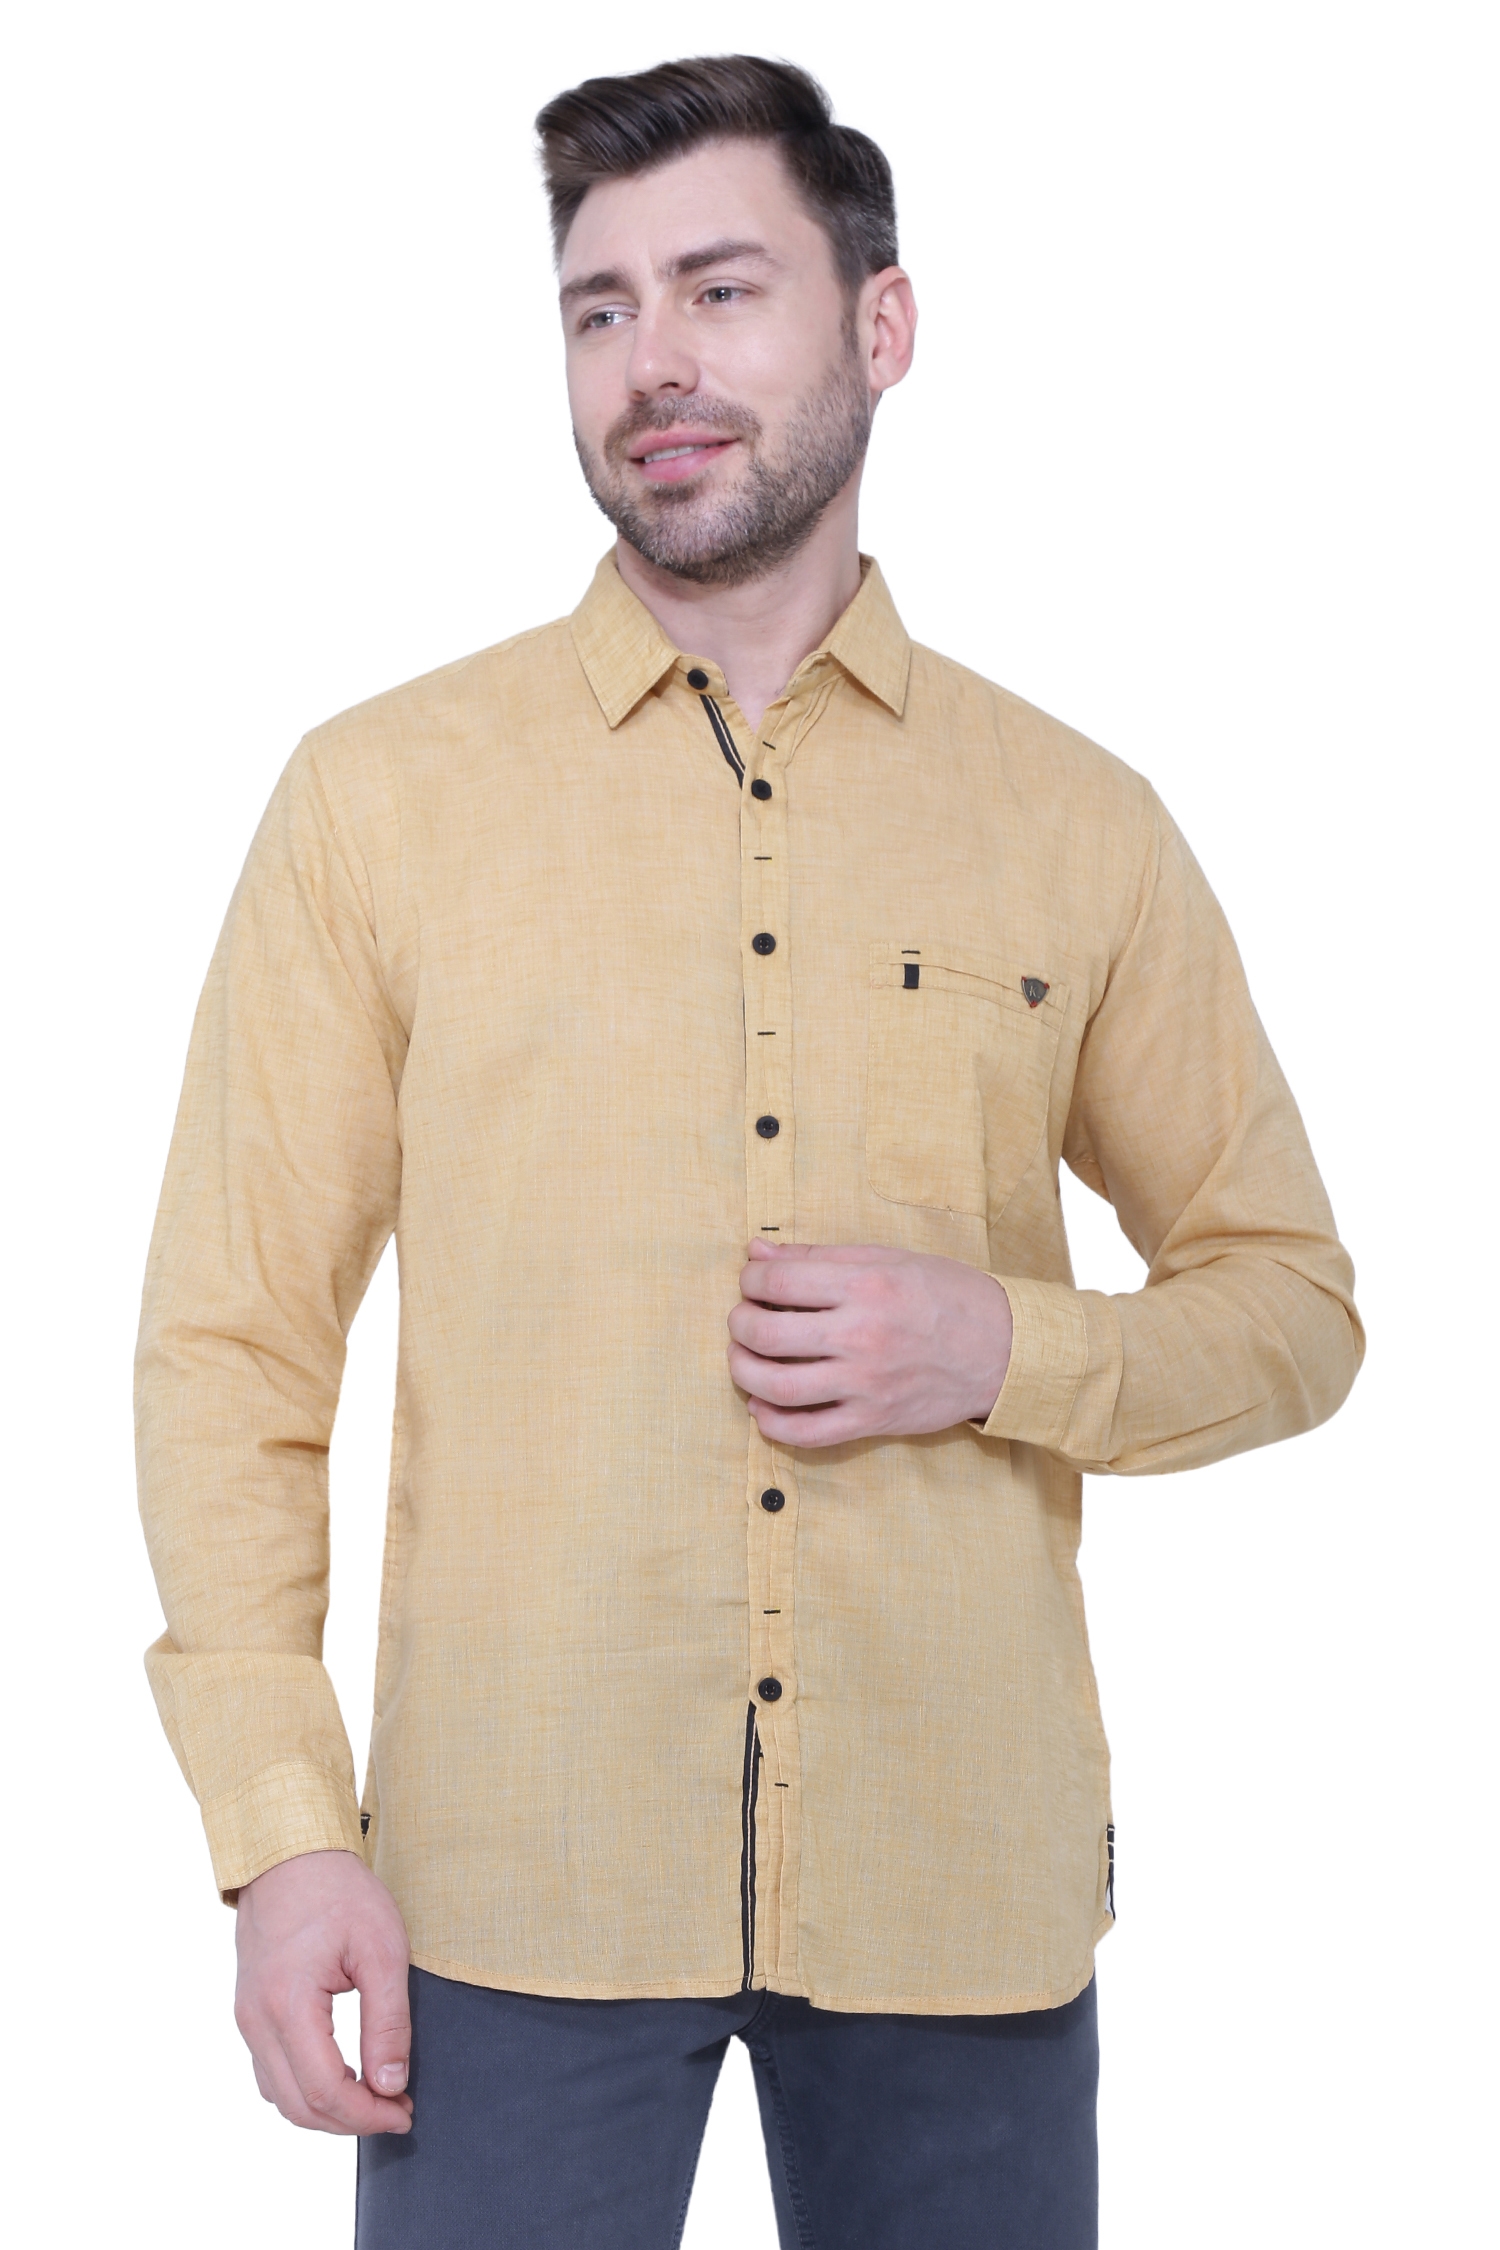 Kuons Avenue Men's Linen Casual Shirt-KACLFS1395A